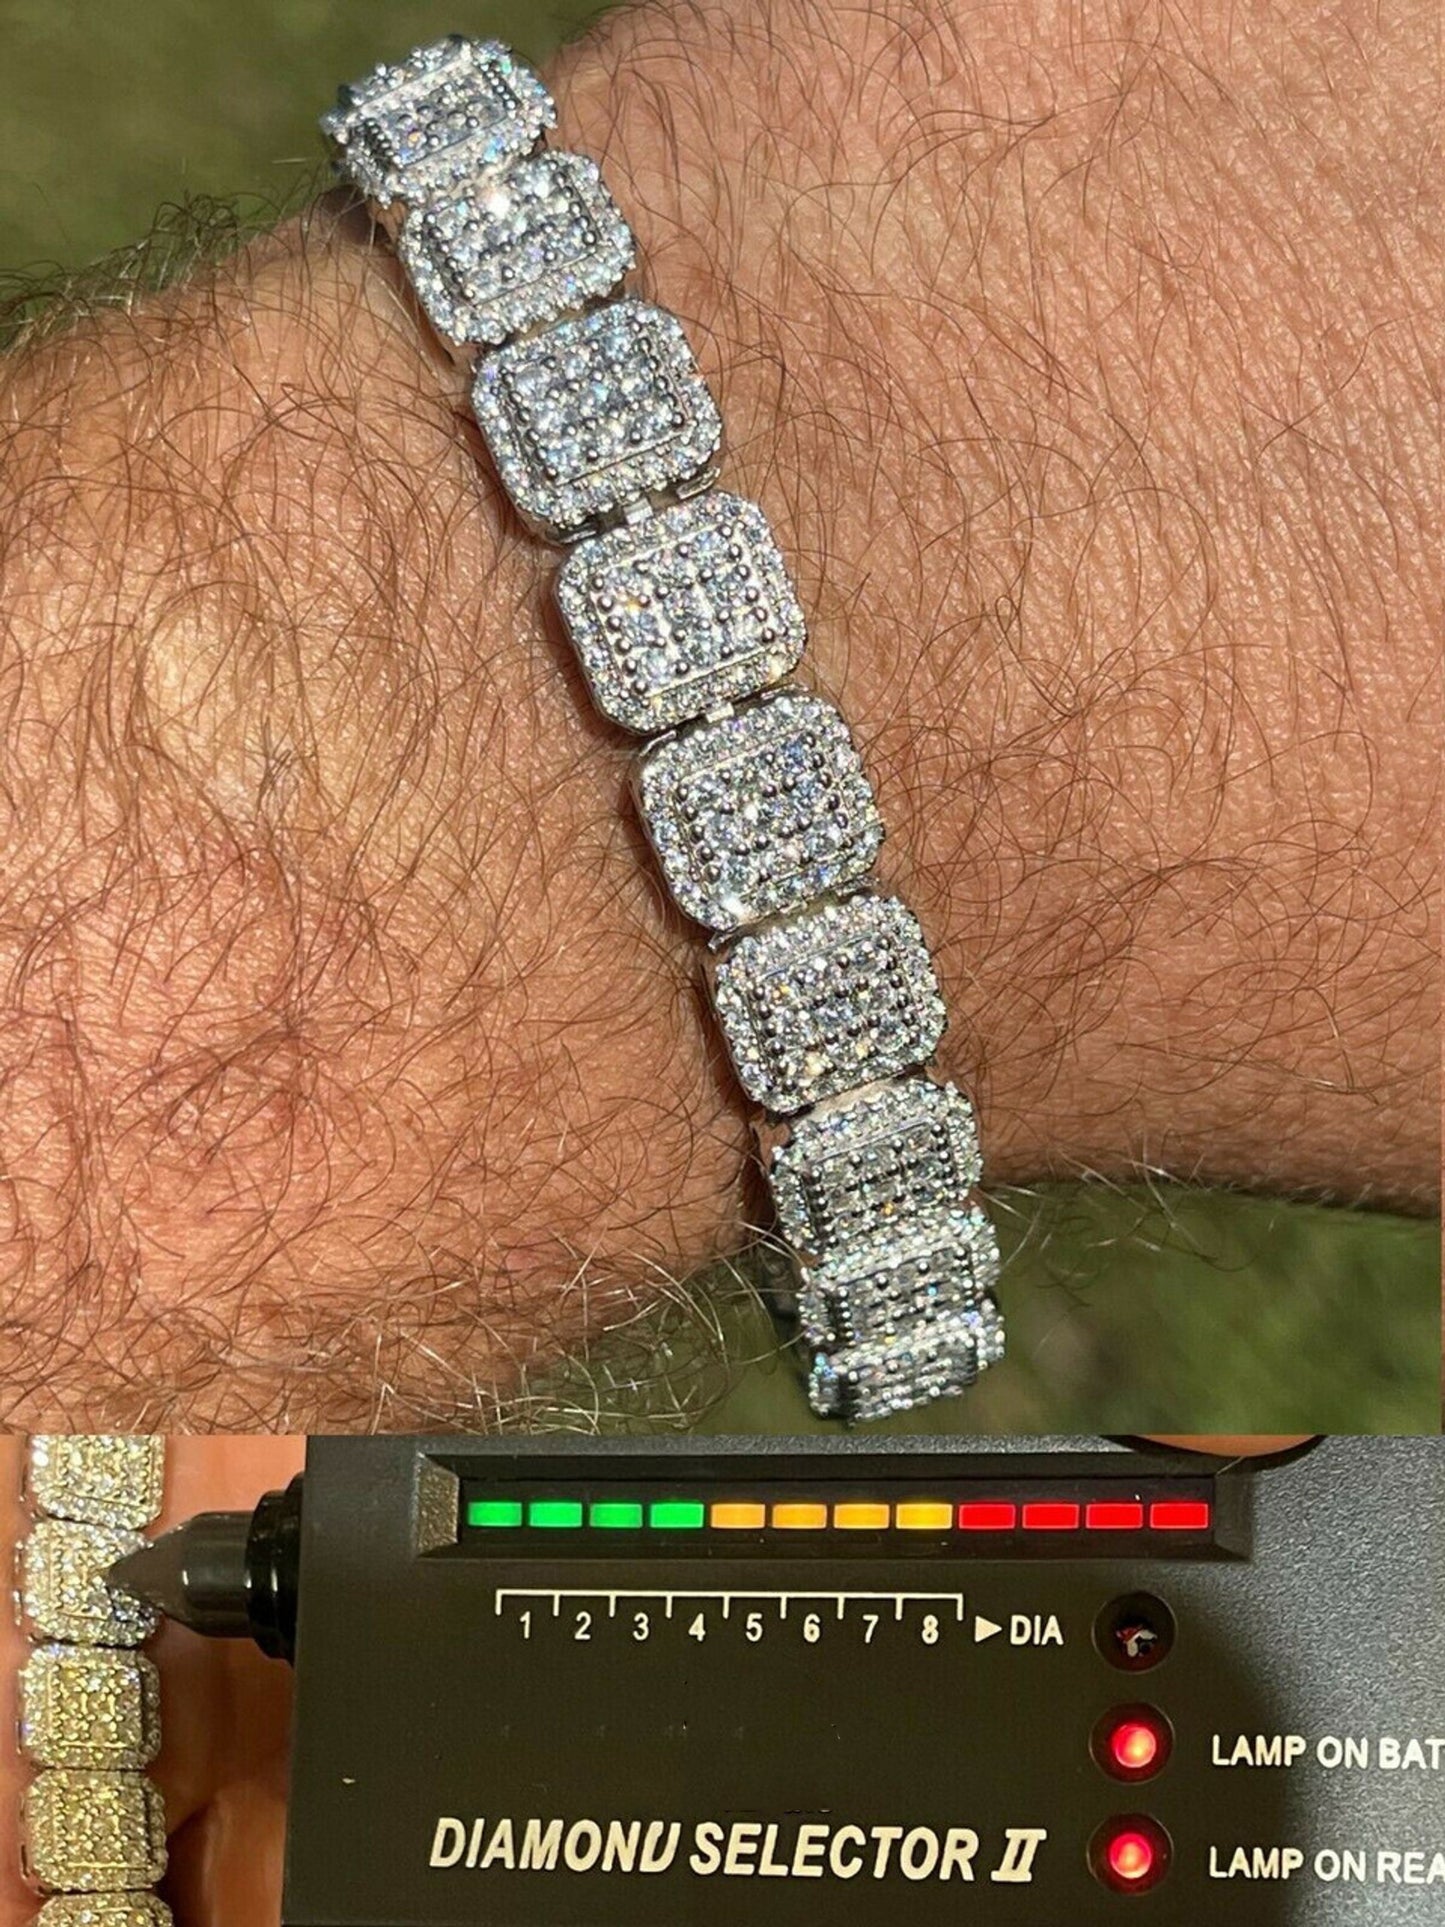 11mm Moissanite Diamond Square Tennis Bracelet in White Gold